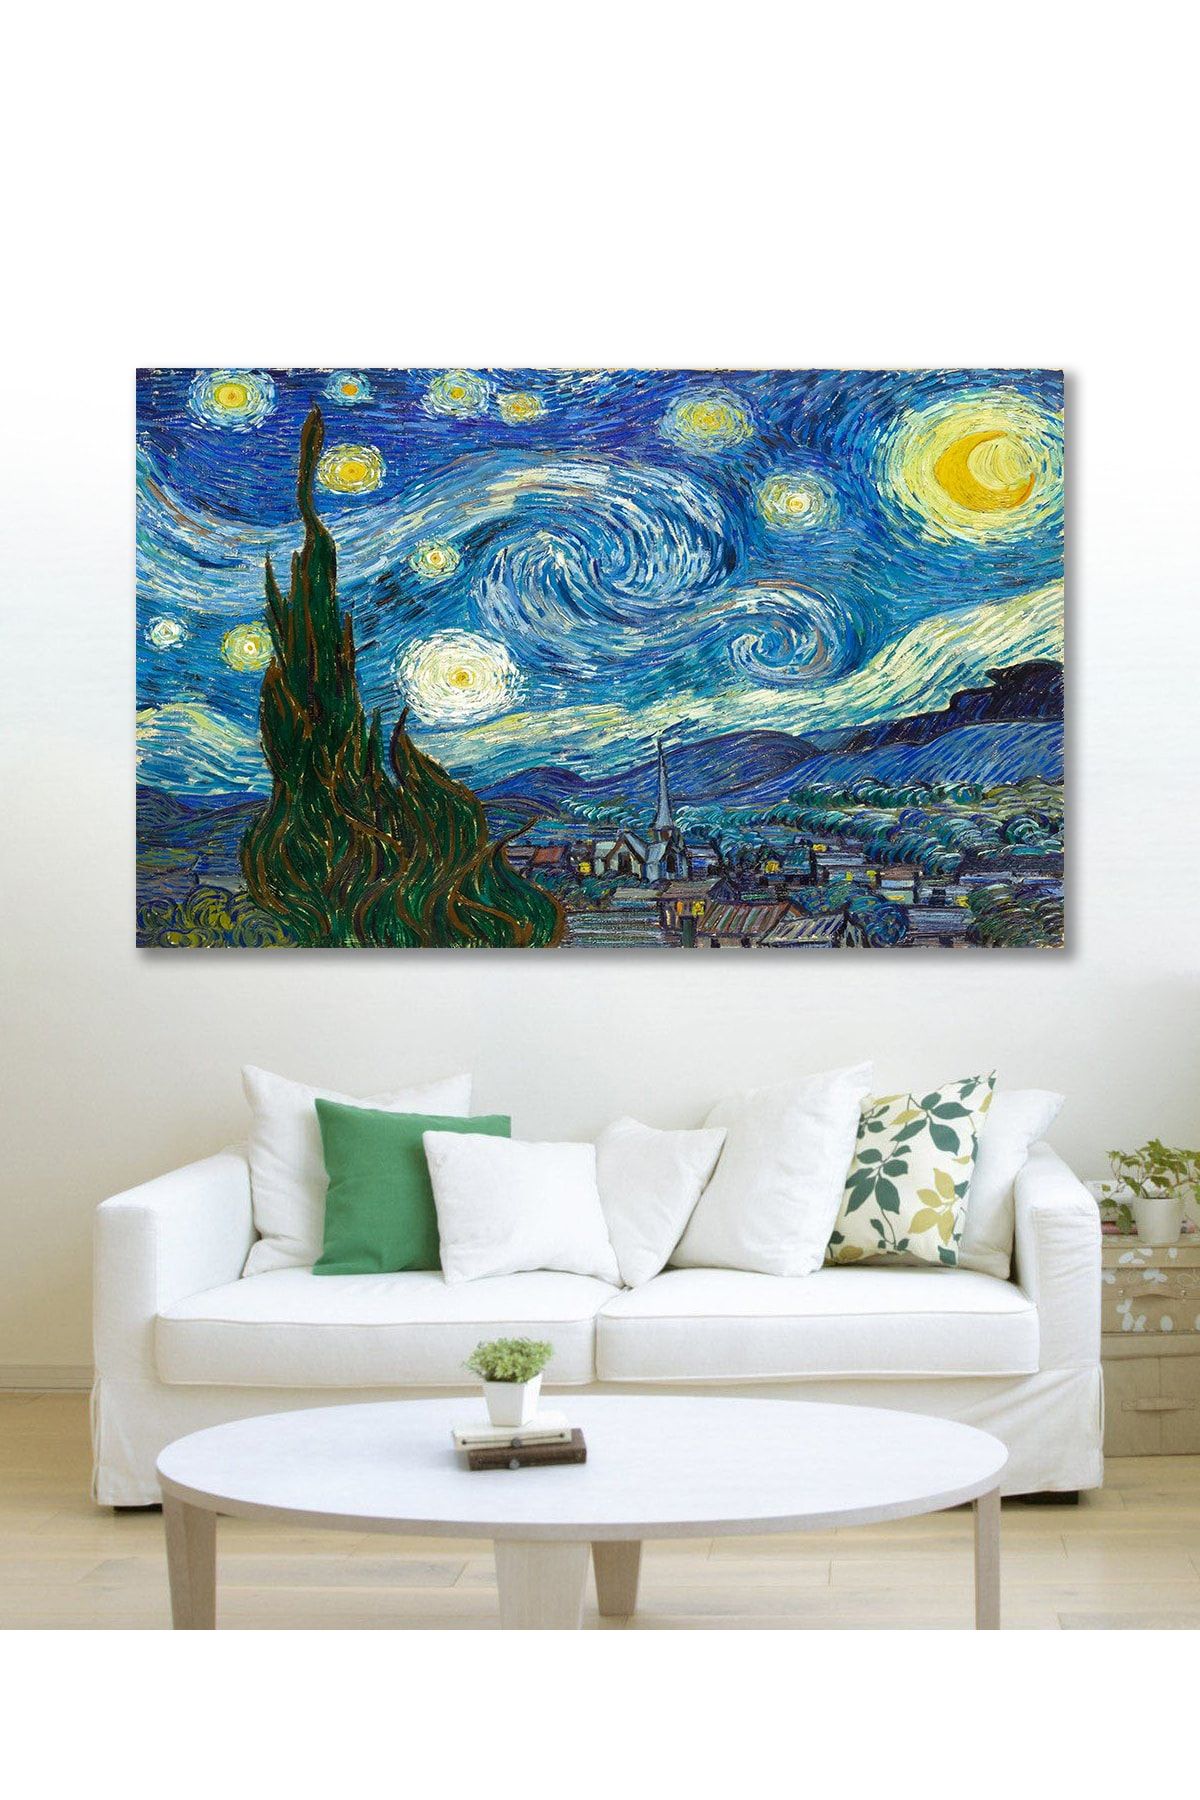 Hediyeler Kapında 70x100 Van Gogh Yıldızlı Gece Duvar Kanvas Tablo